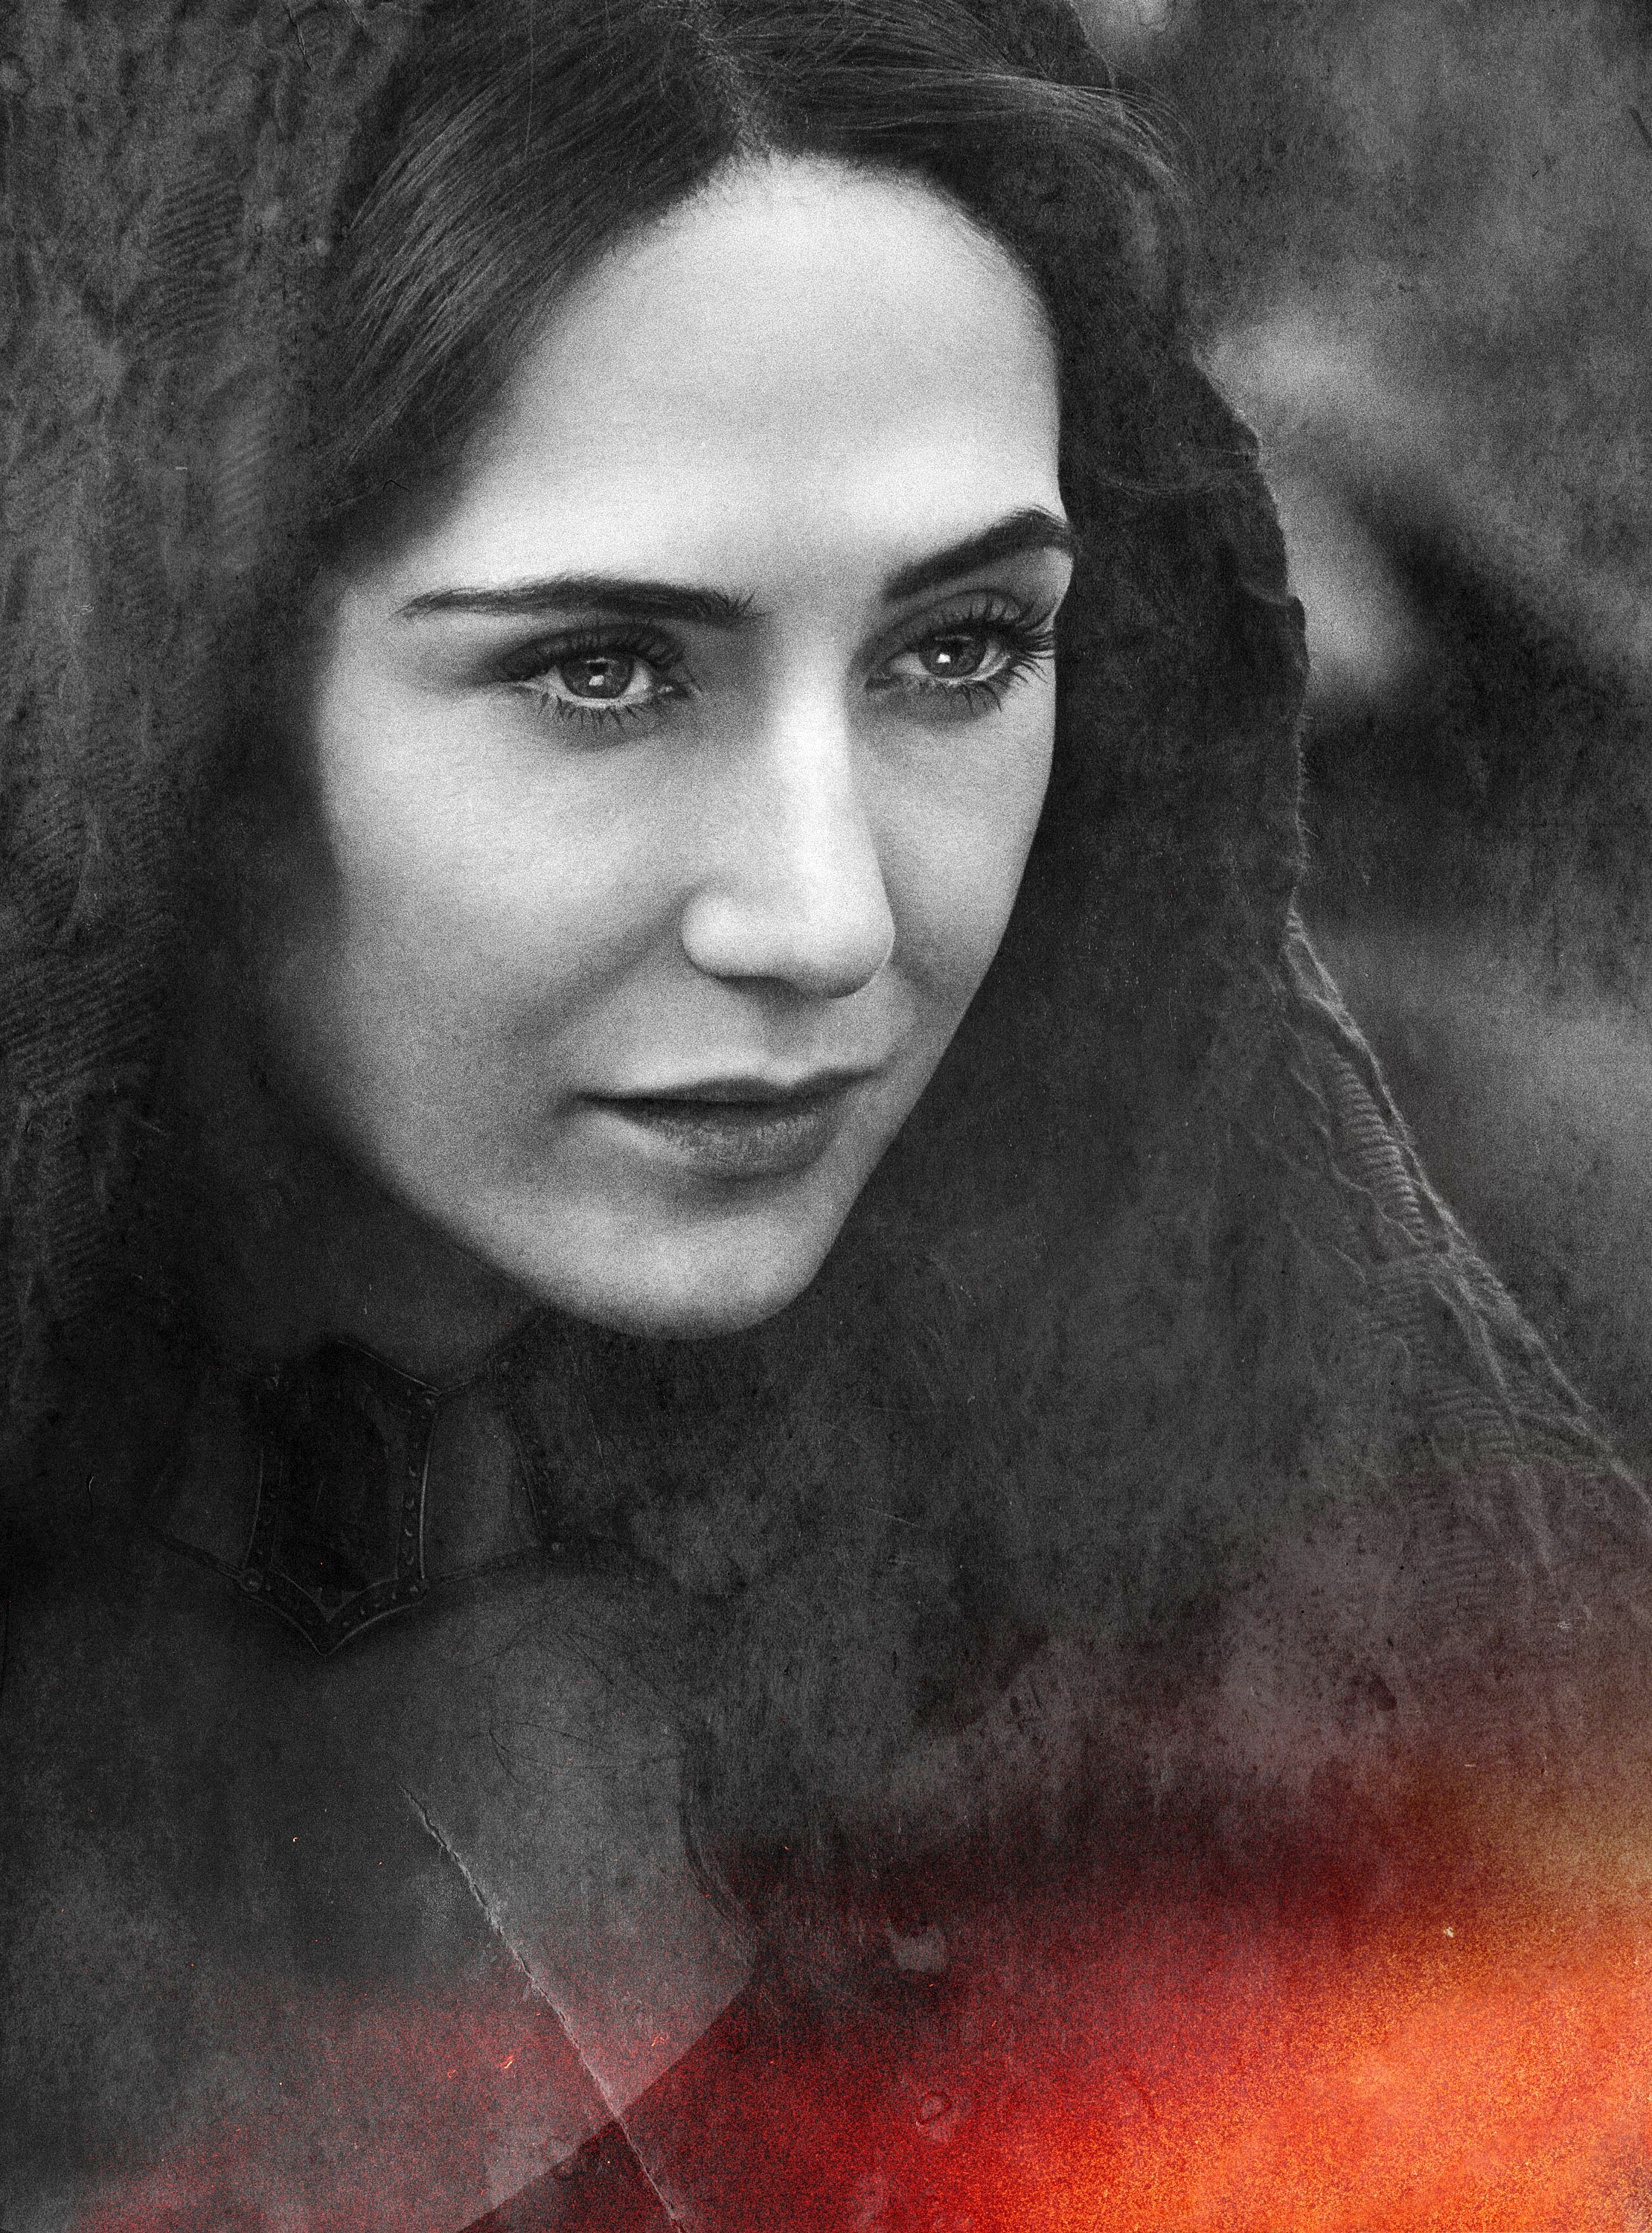 Fotos Game of Thrones Melisandre Gesicht junge frau Film 2220x3000 für Handy Mädchens junge Frauen